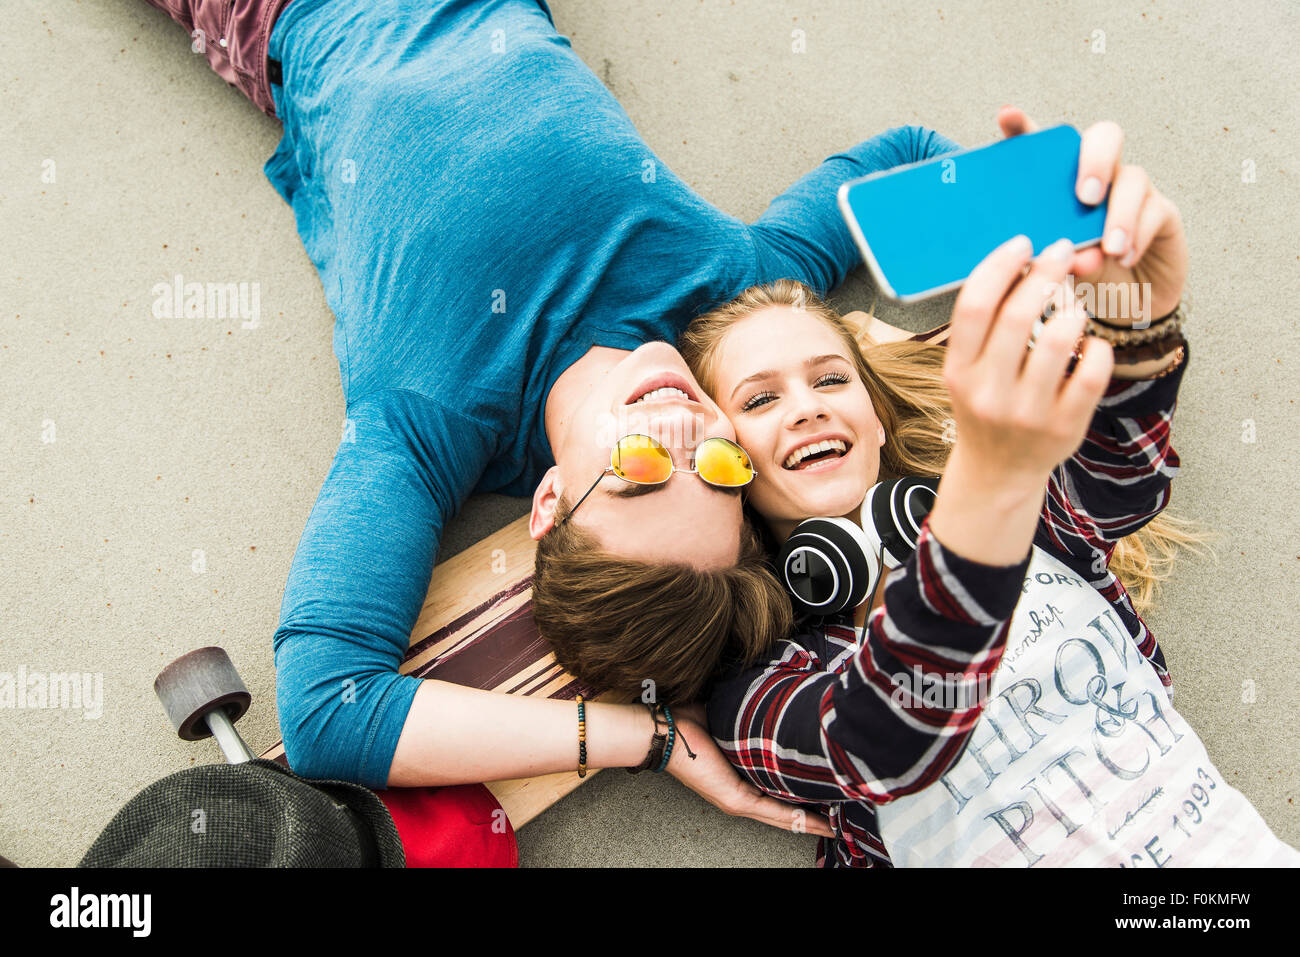 Felice coppia giovane disteso sul terreno con lo skateboard guardando al telefono cellulare Foto Stock